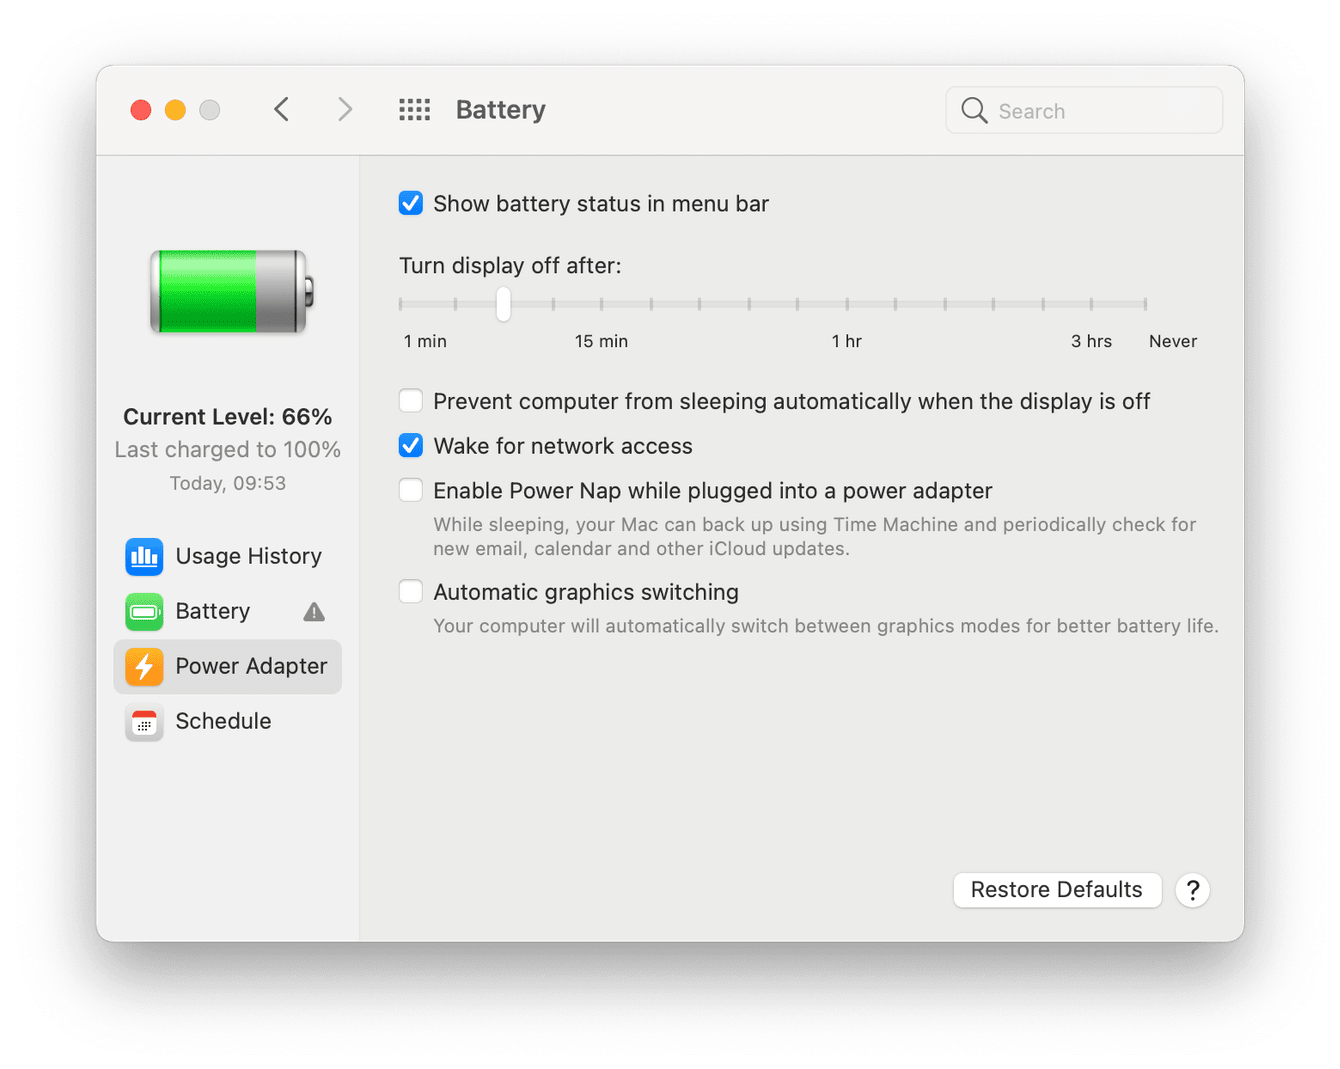 Mac battery preferences